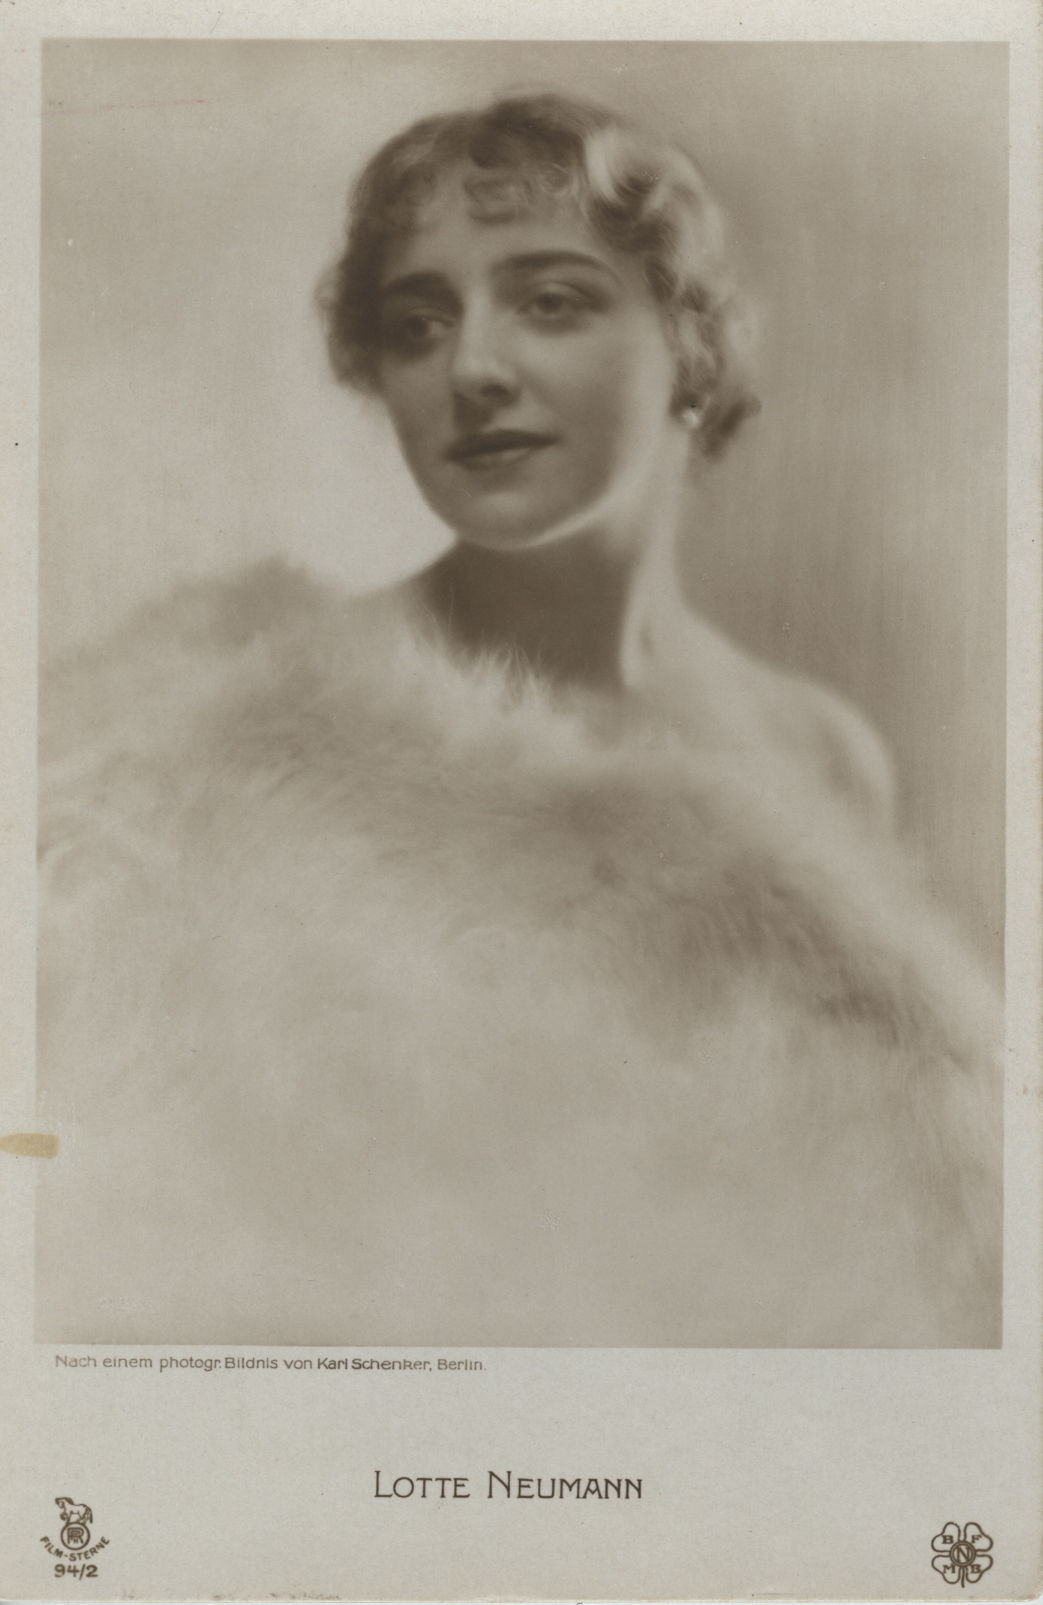 Karl Schenker, Lotte Neumann, around 1920 (celebrity postcard), Museum Ludwig